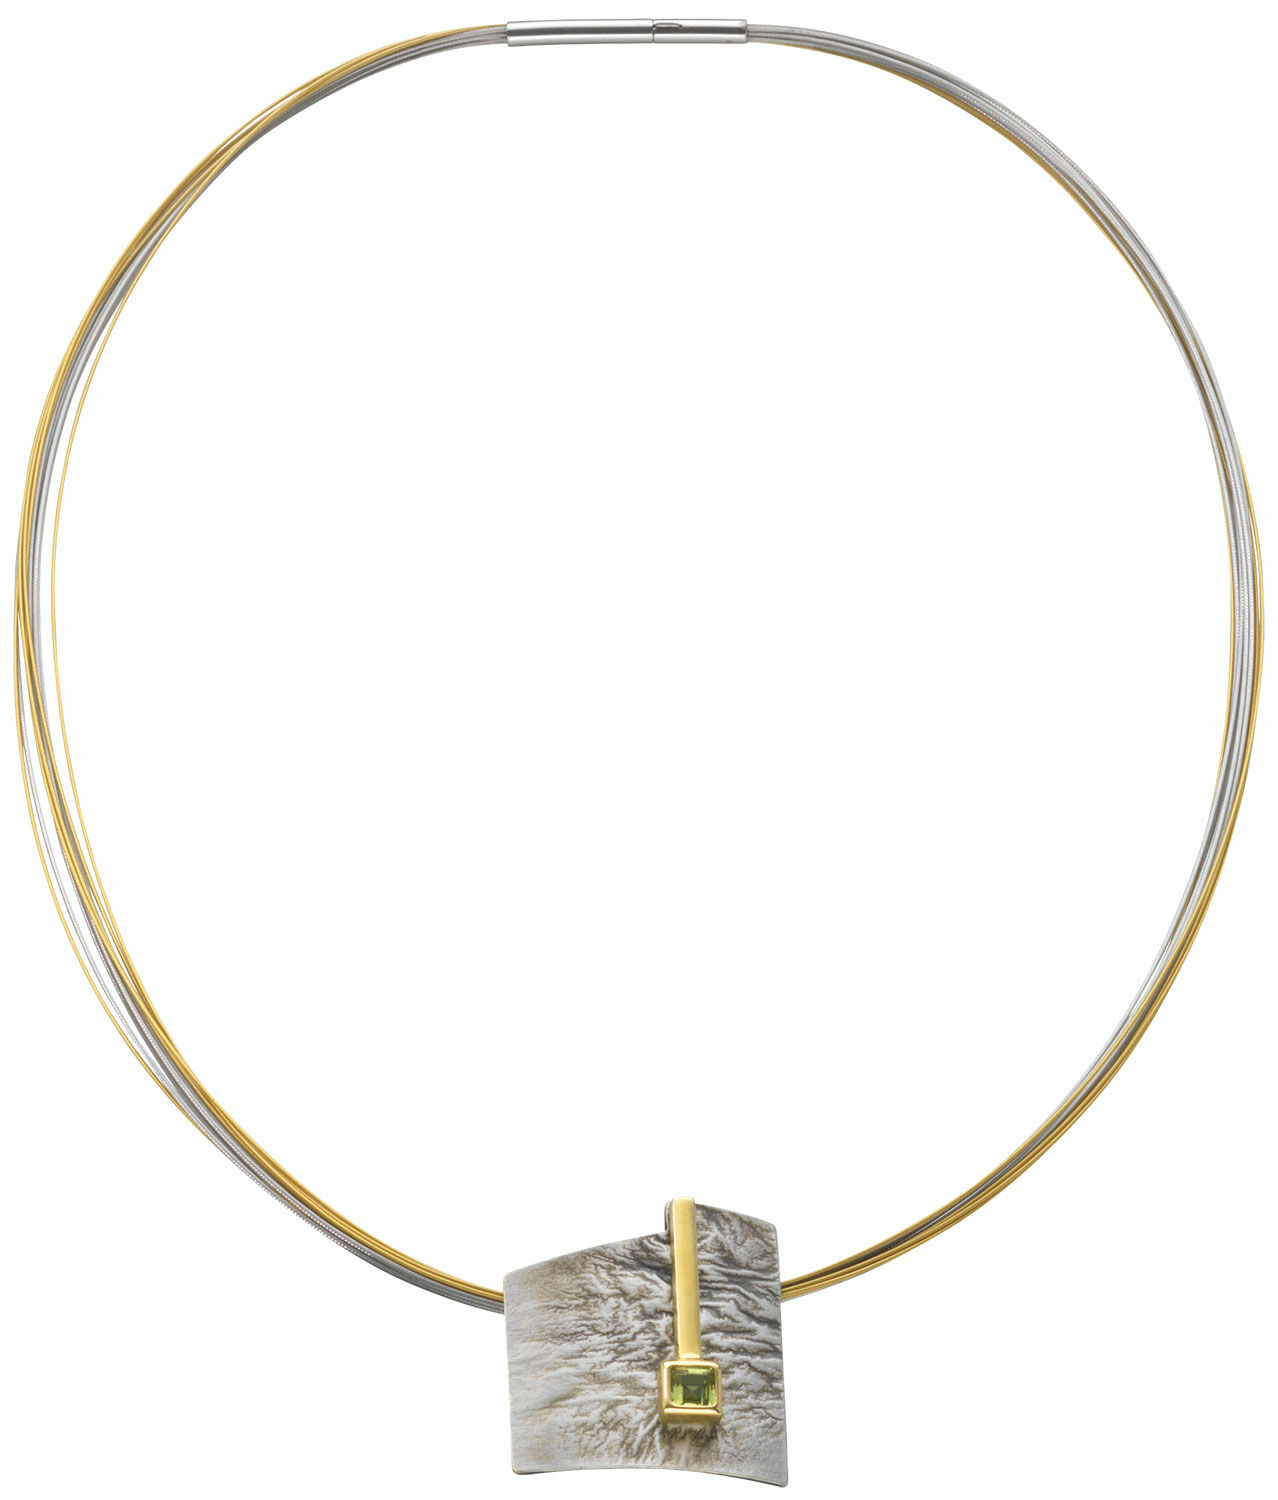 Necklace "Linea"